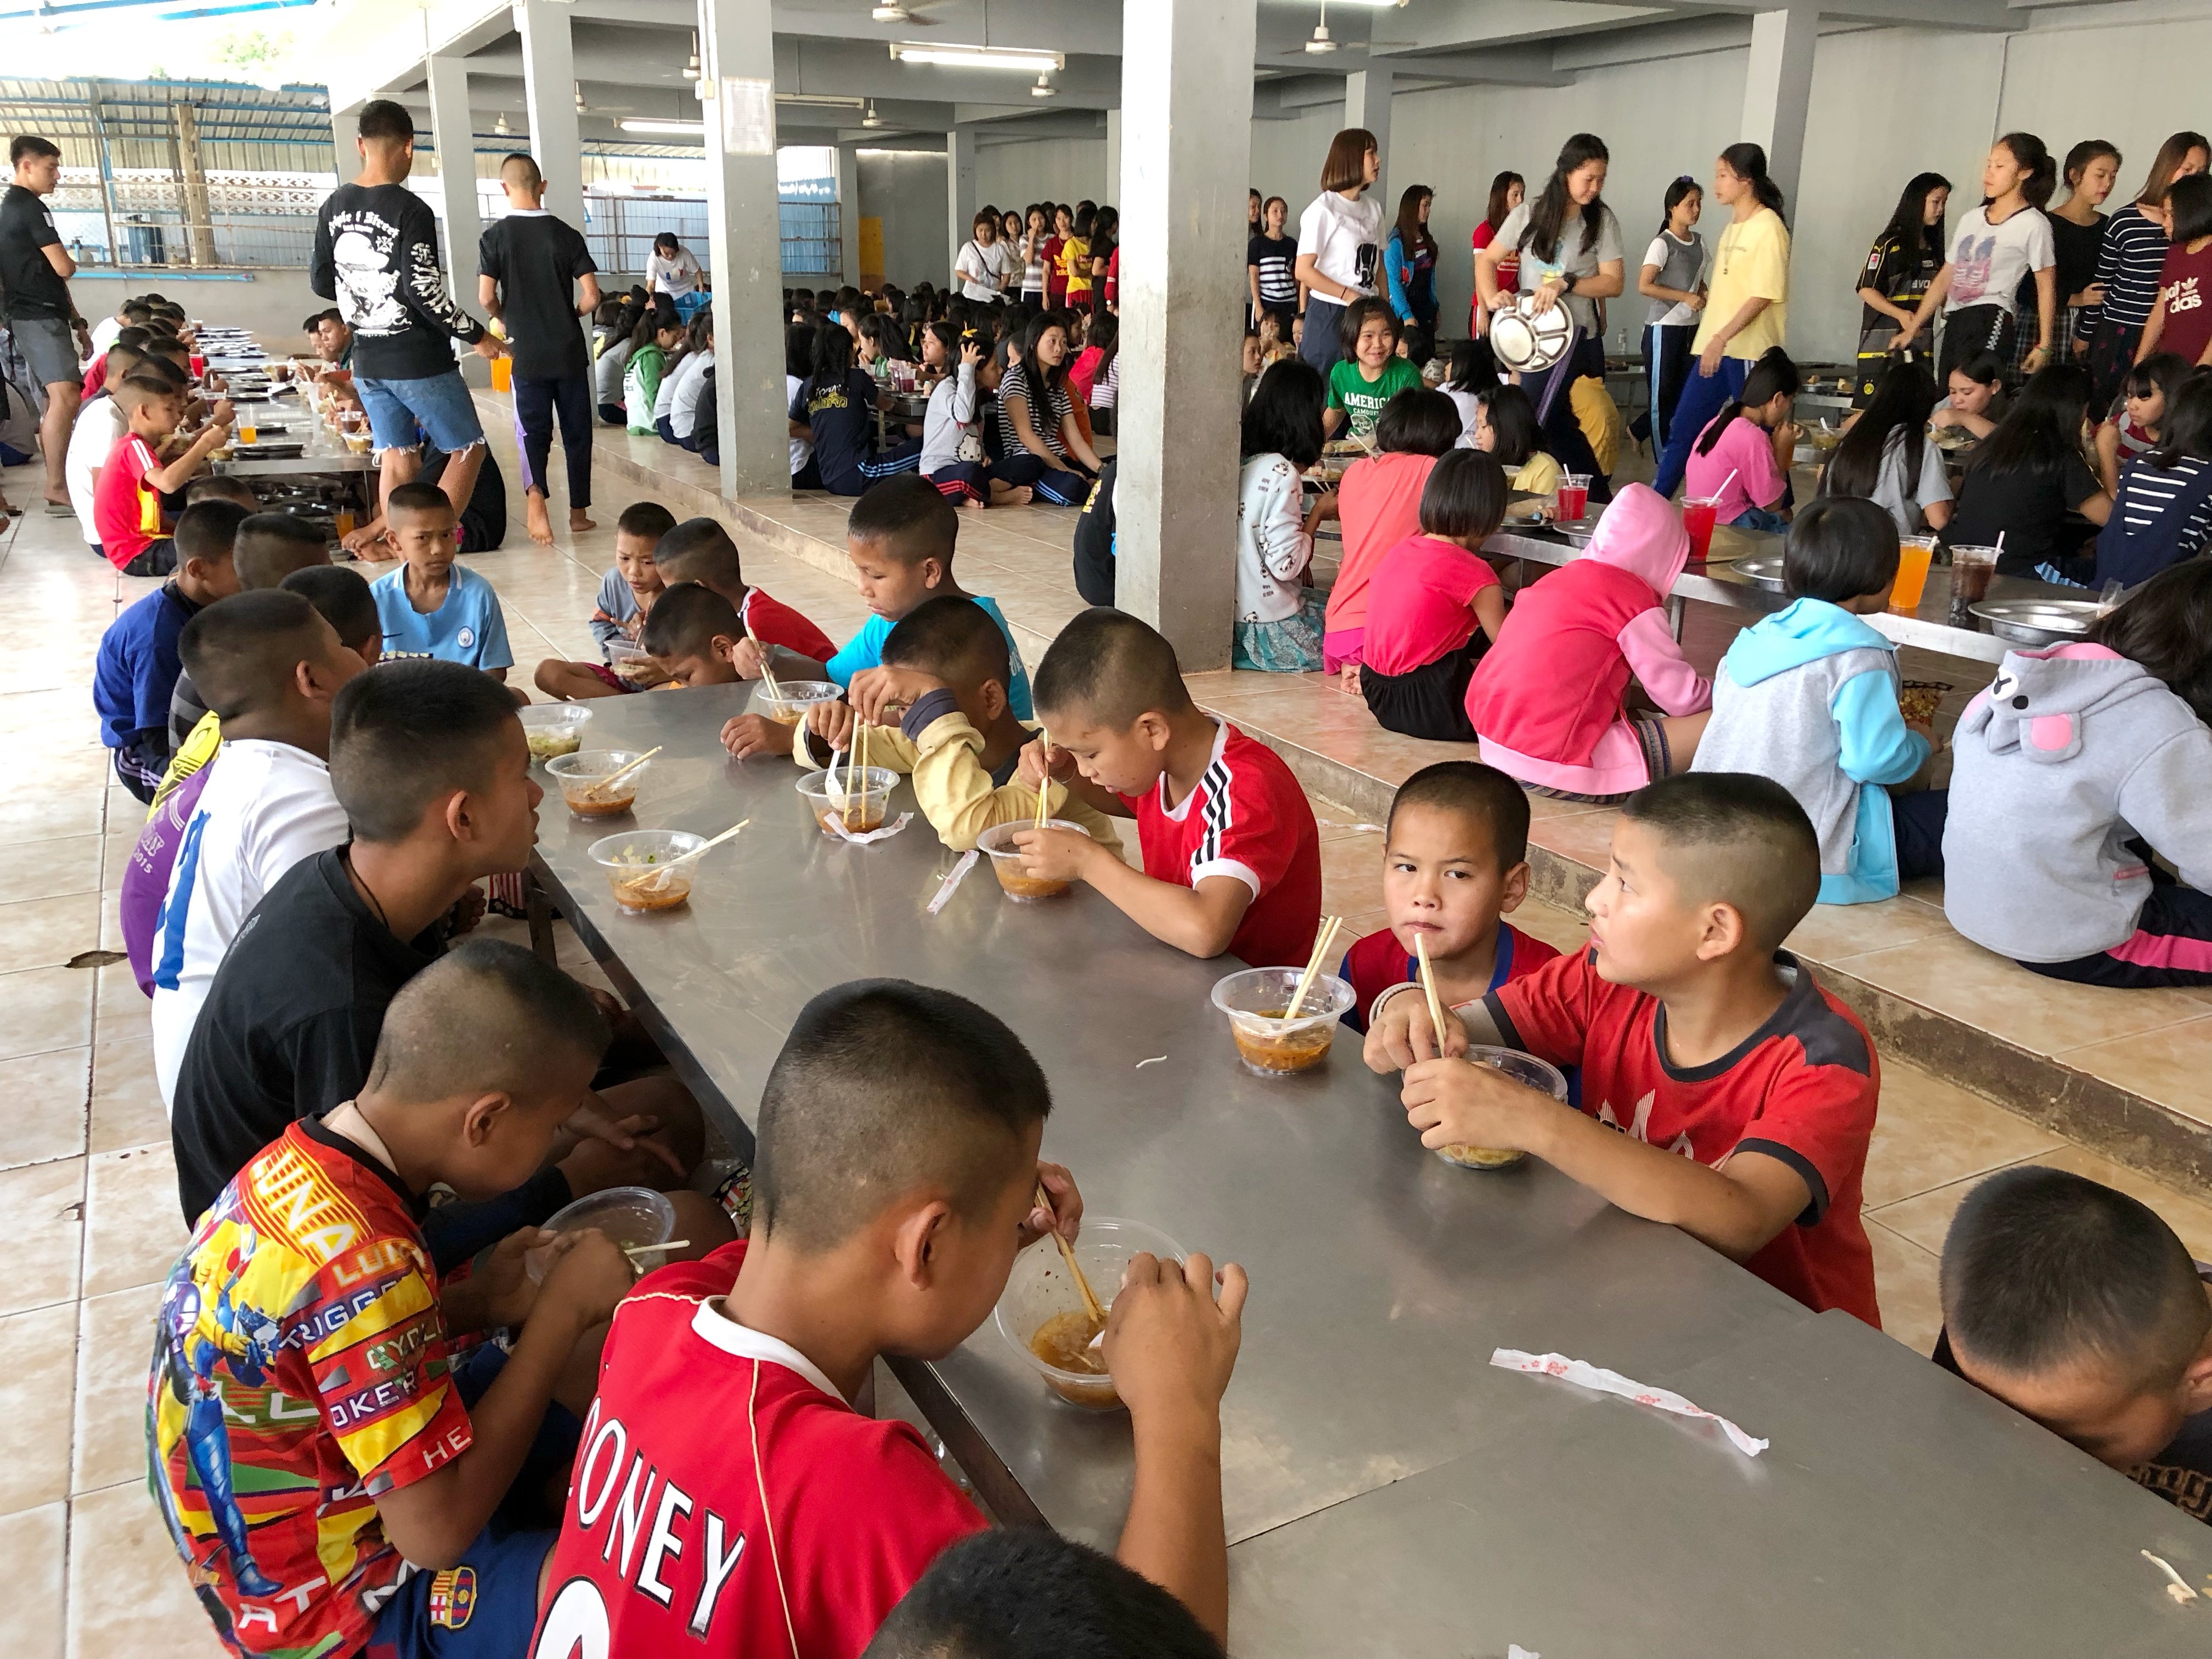 Niños en orfanato almorzando. | Foto: Shutterstock